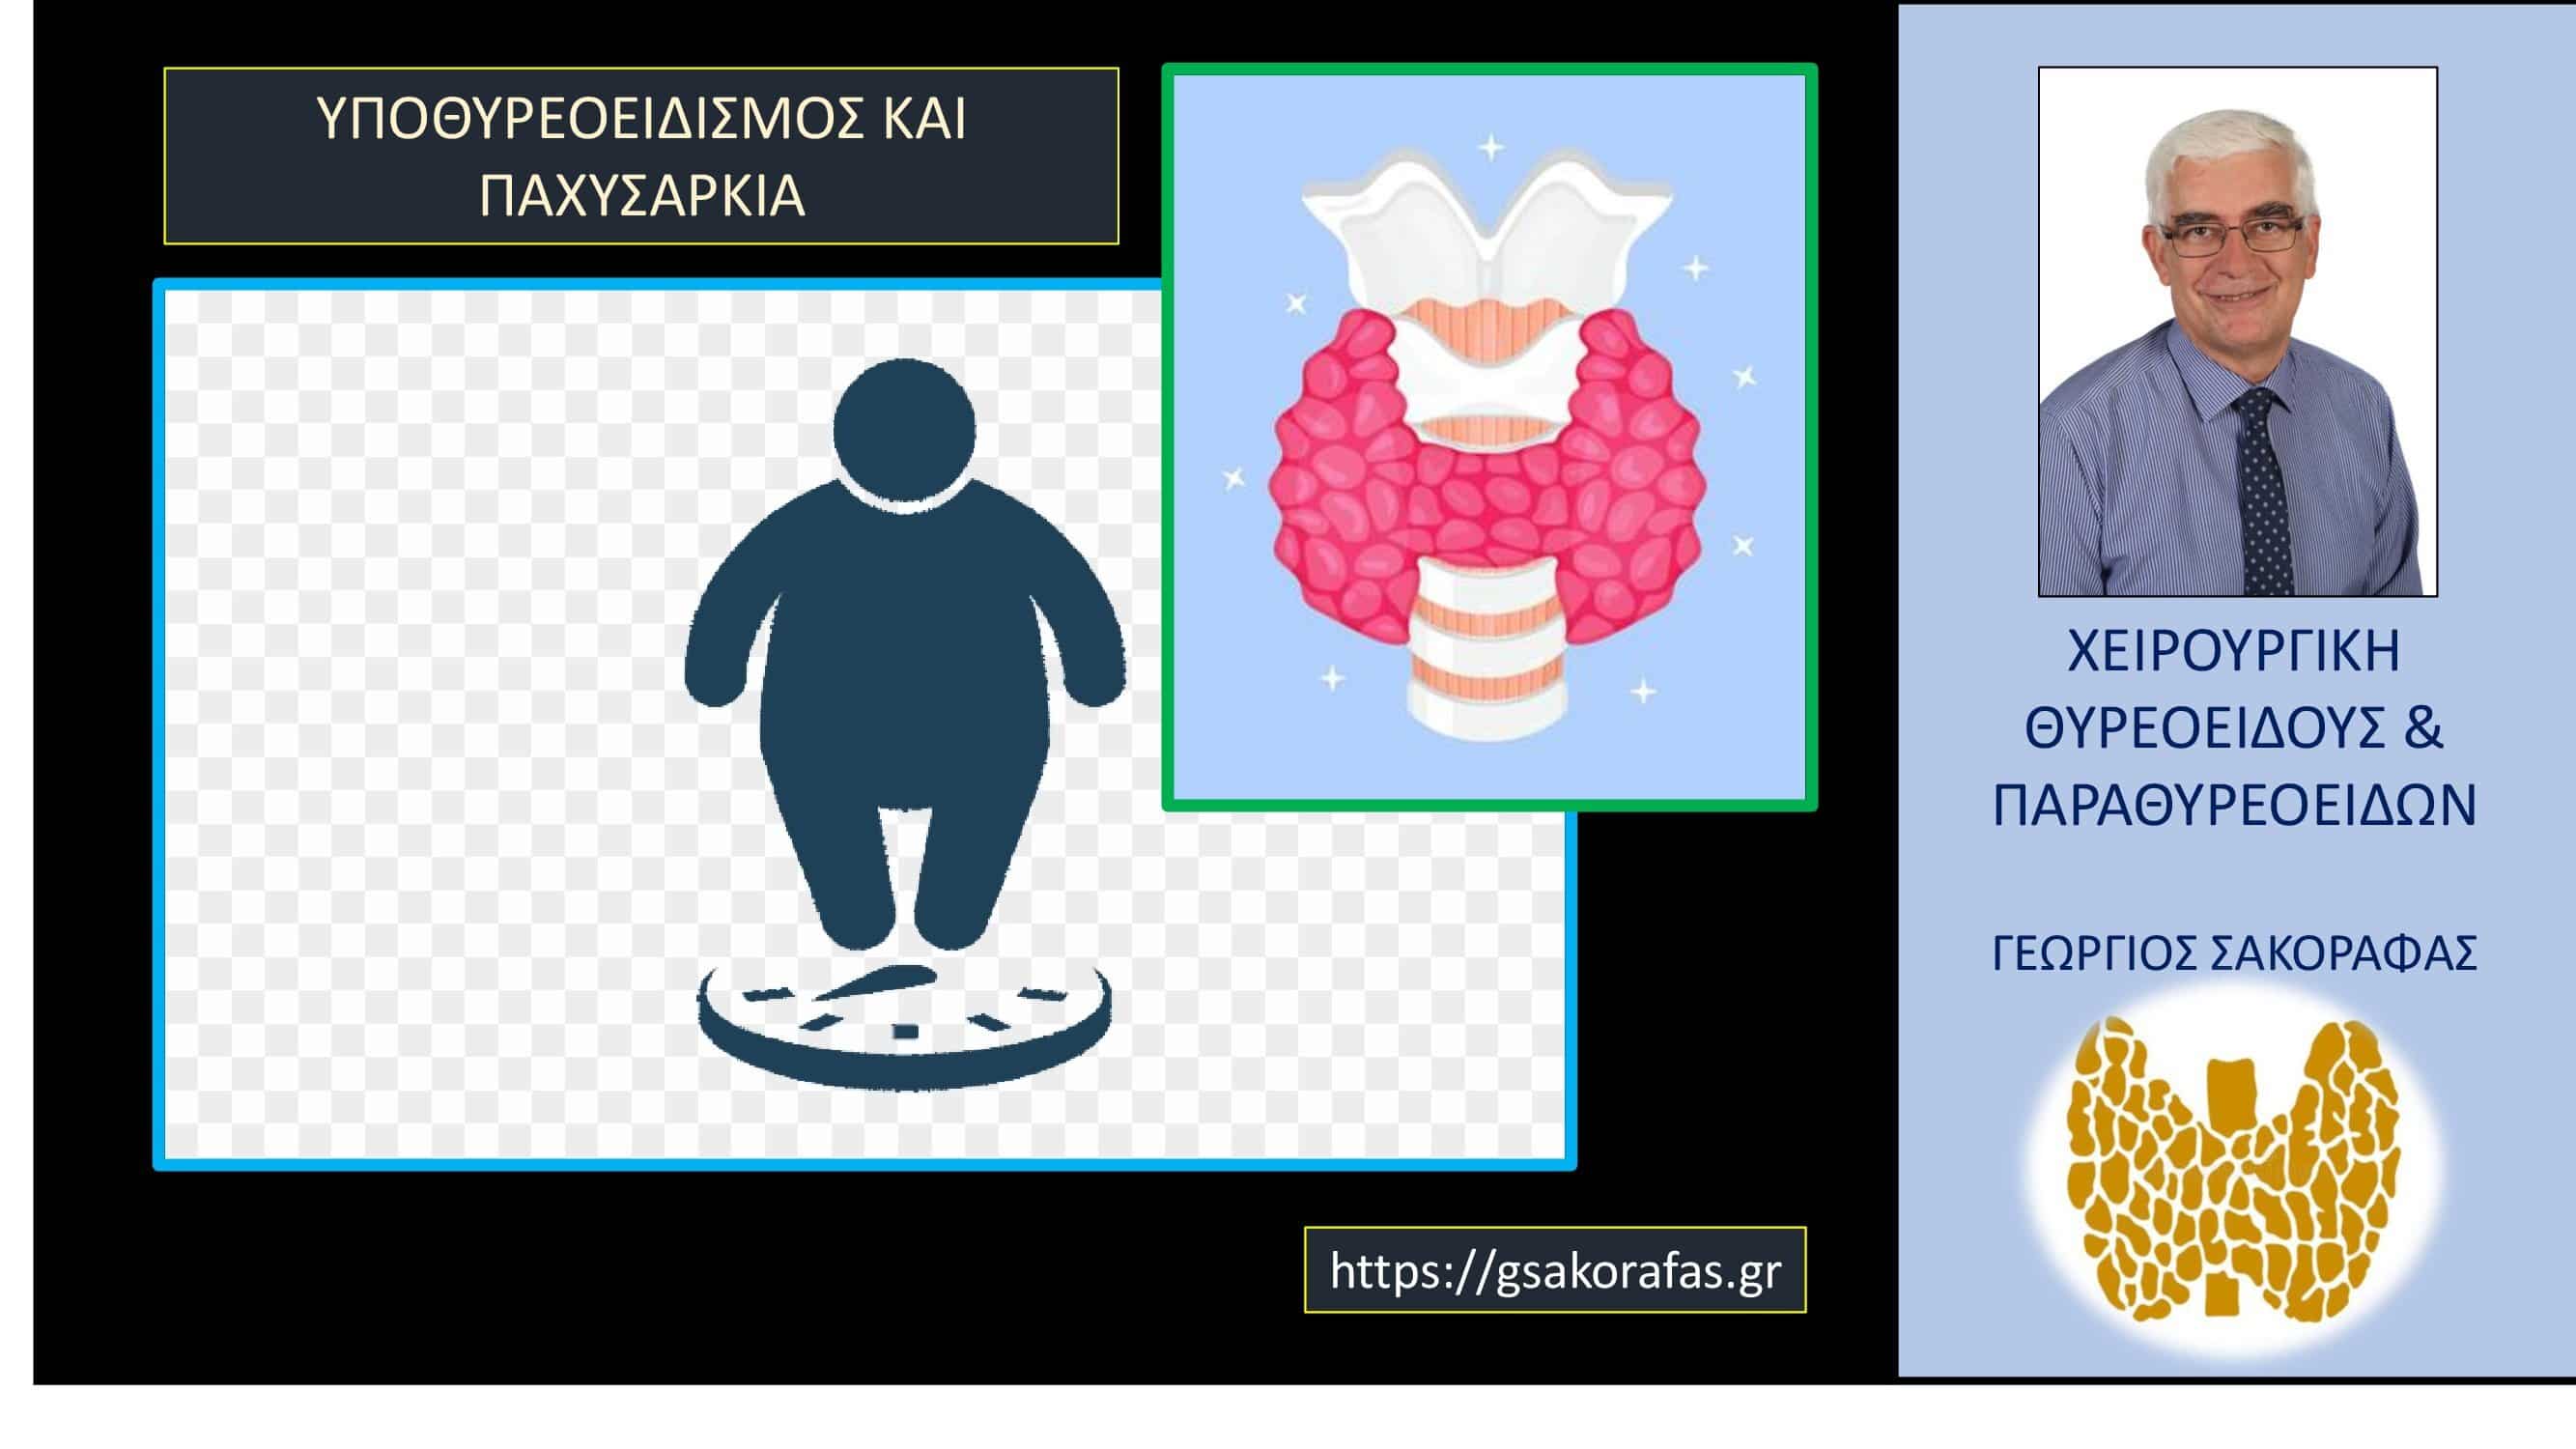 Υποθυρεοειδισμός και παχυσαρκία – “θα χάσω βάρος μετά τη θεραπεία του υποθυρεοειδισμού?”